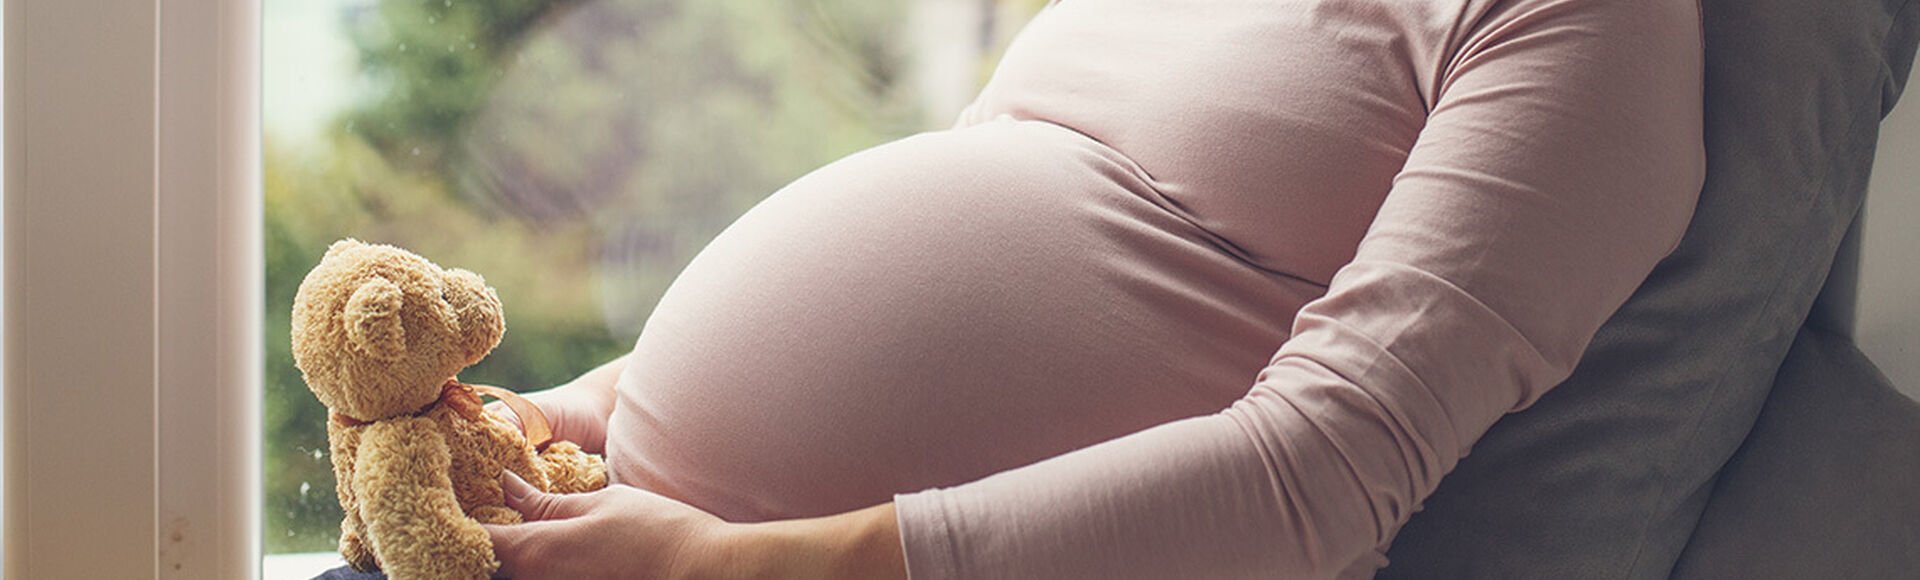 Obstetra tu acompañante durante el parto | Más Abrazos by Huggies